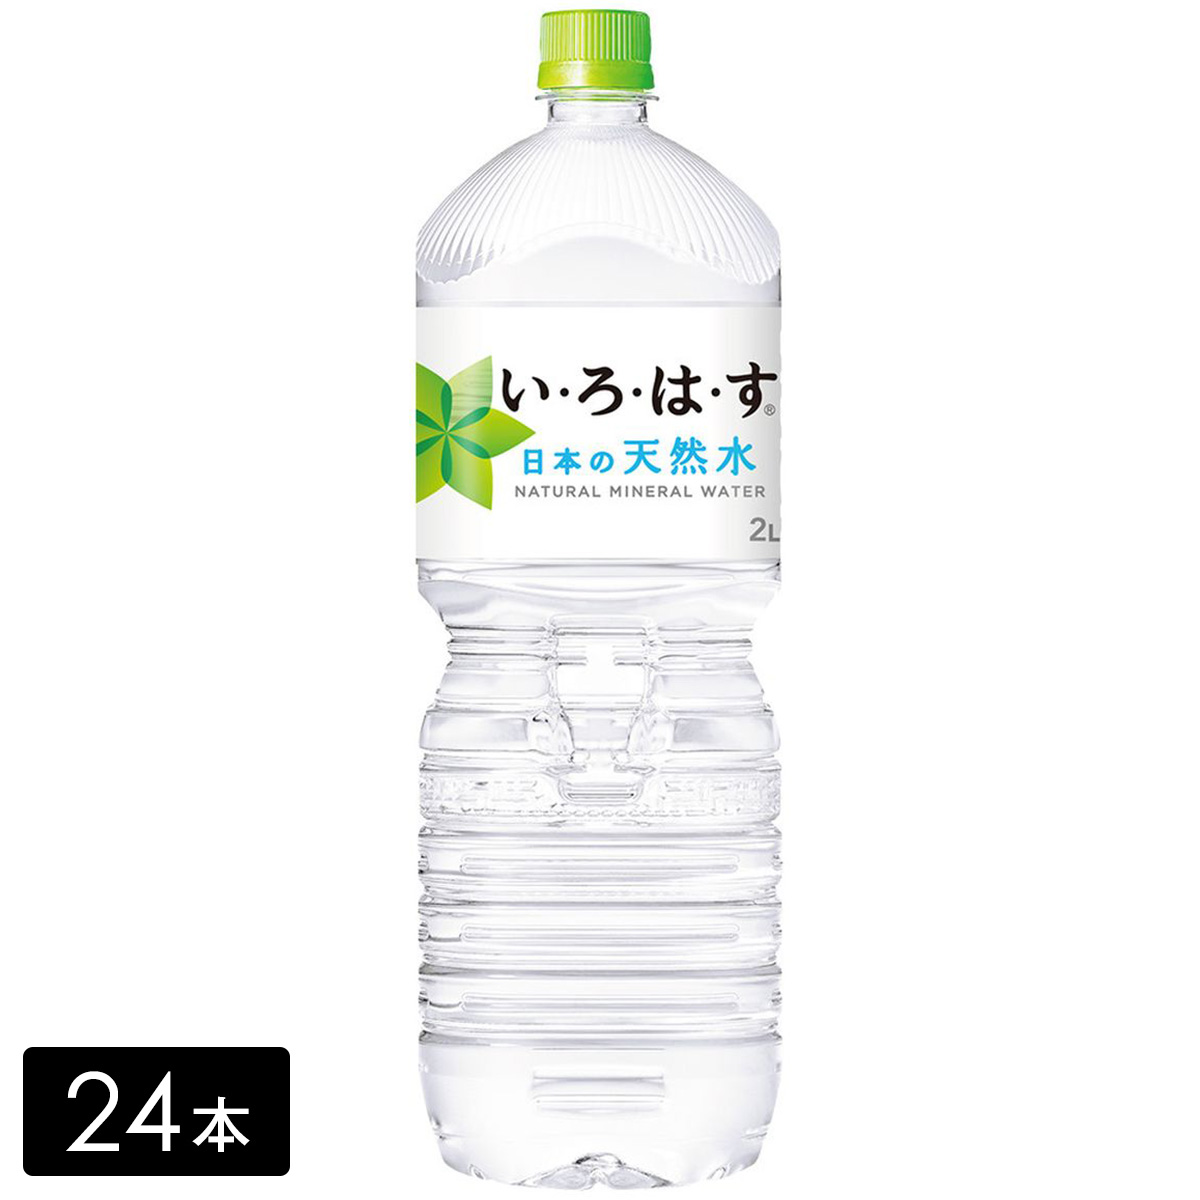 [送料無料]い・ろ・は・す 天然水 2L×24本(6本×4箱) いろはす 水 ミネラルウォーター  ペットボトル ケース売り備蓄 水ストック まとめ買い